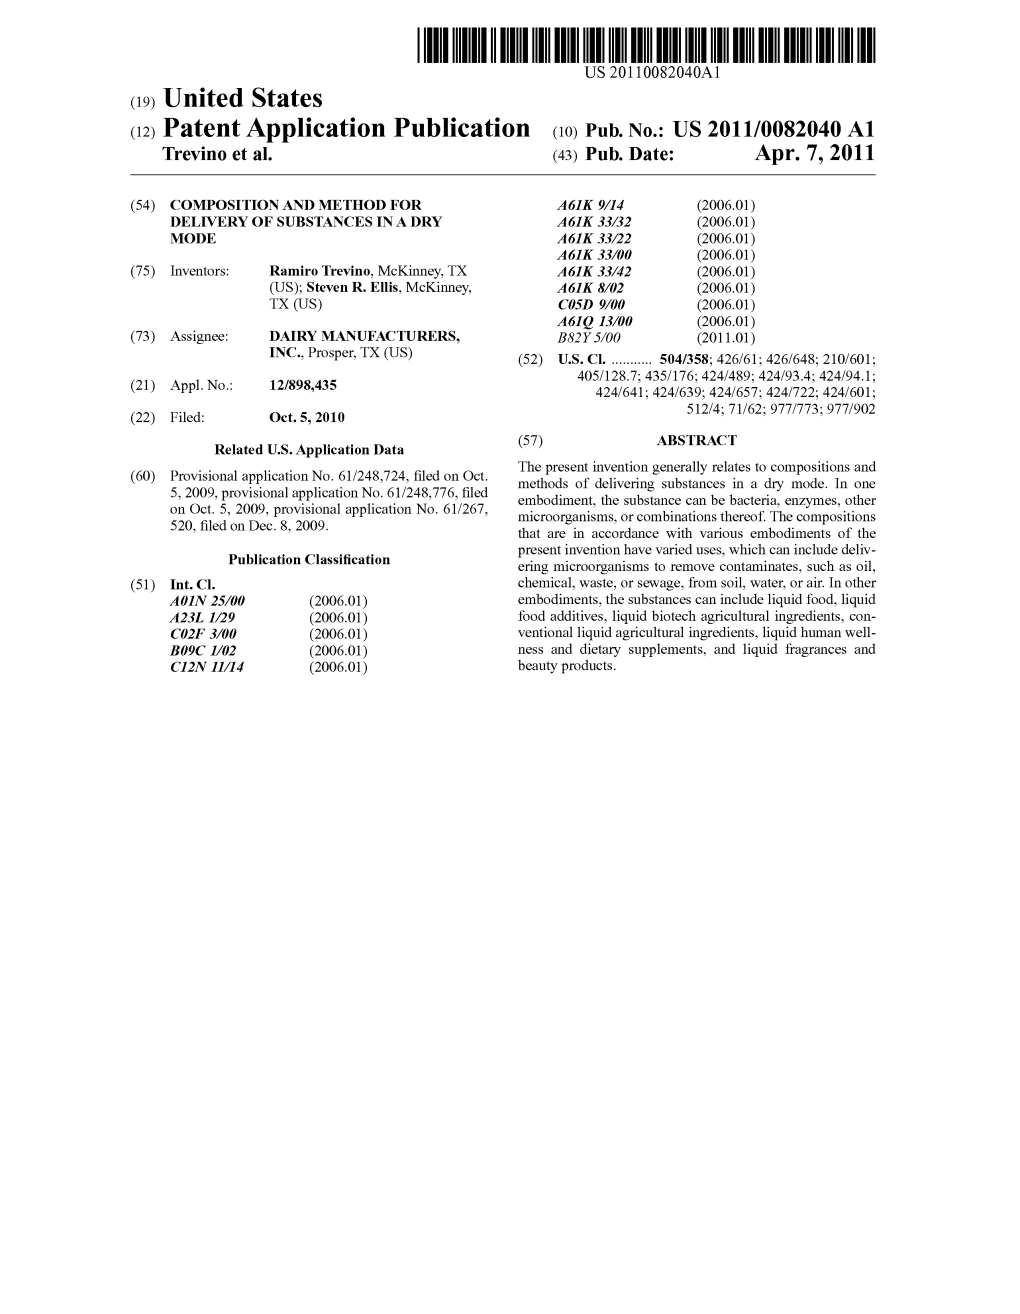 (12) Patent Application Publication (10) Pub. No.: US 2011/0082040 A1 Trevino Et Al